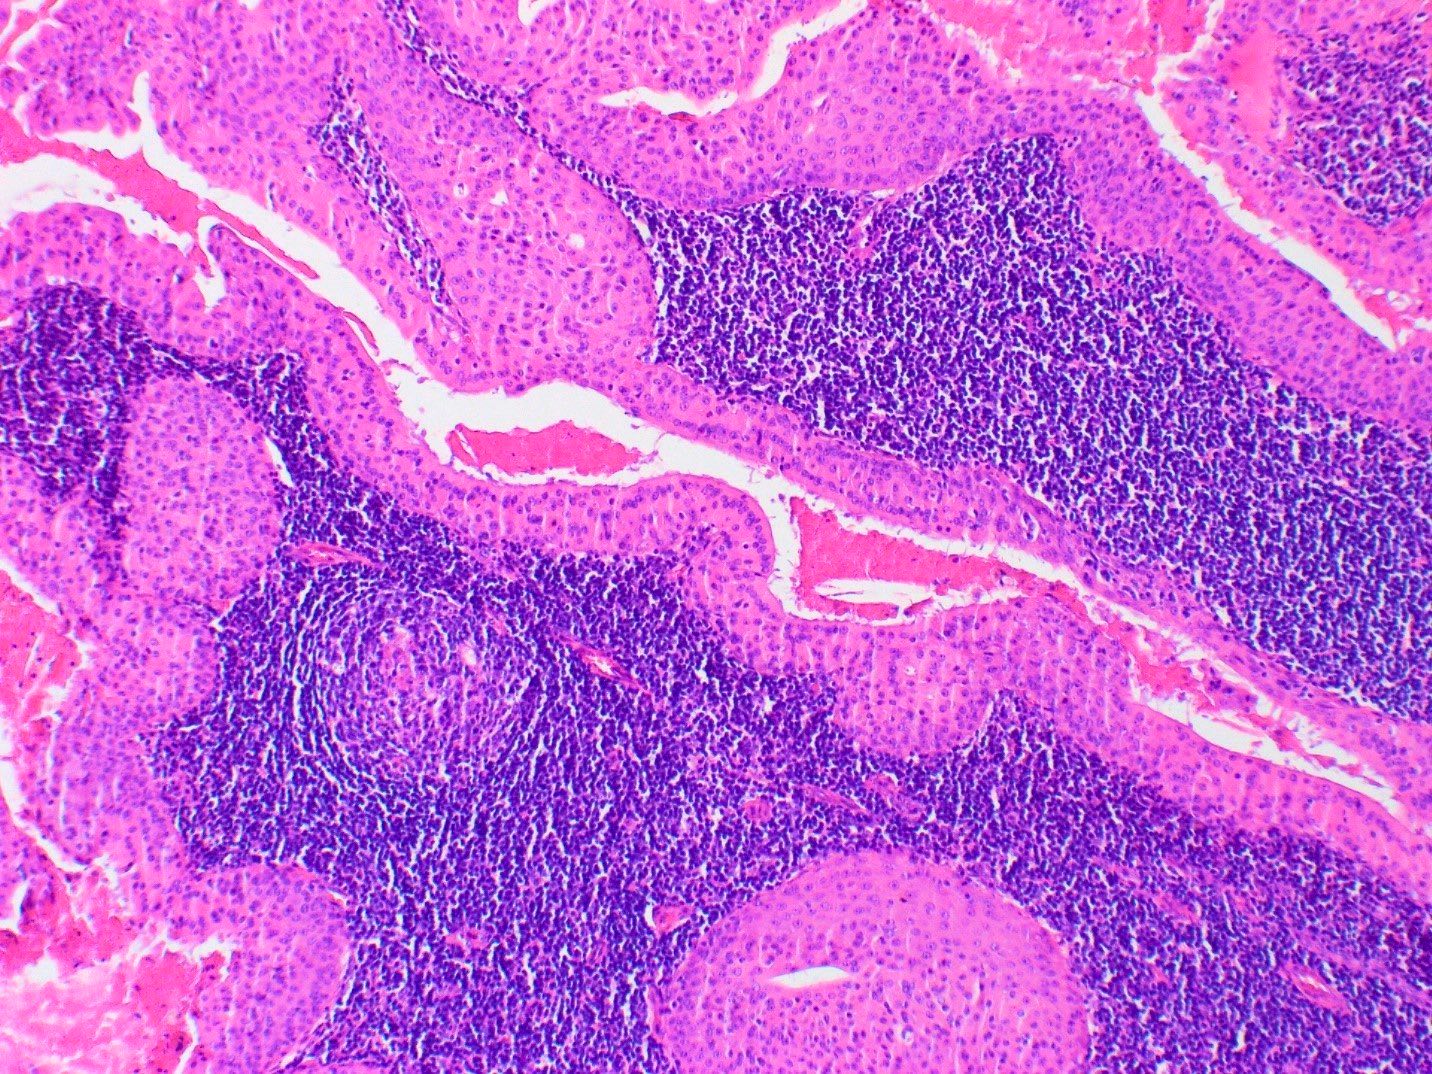 Bilayered oncocytic epithelium with lymphoid background